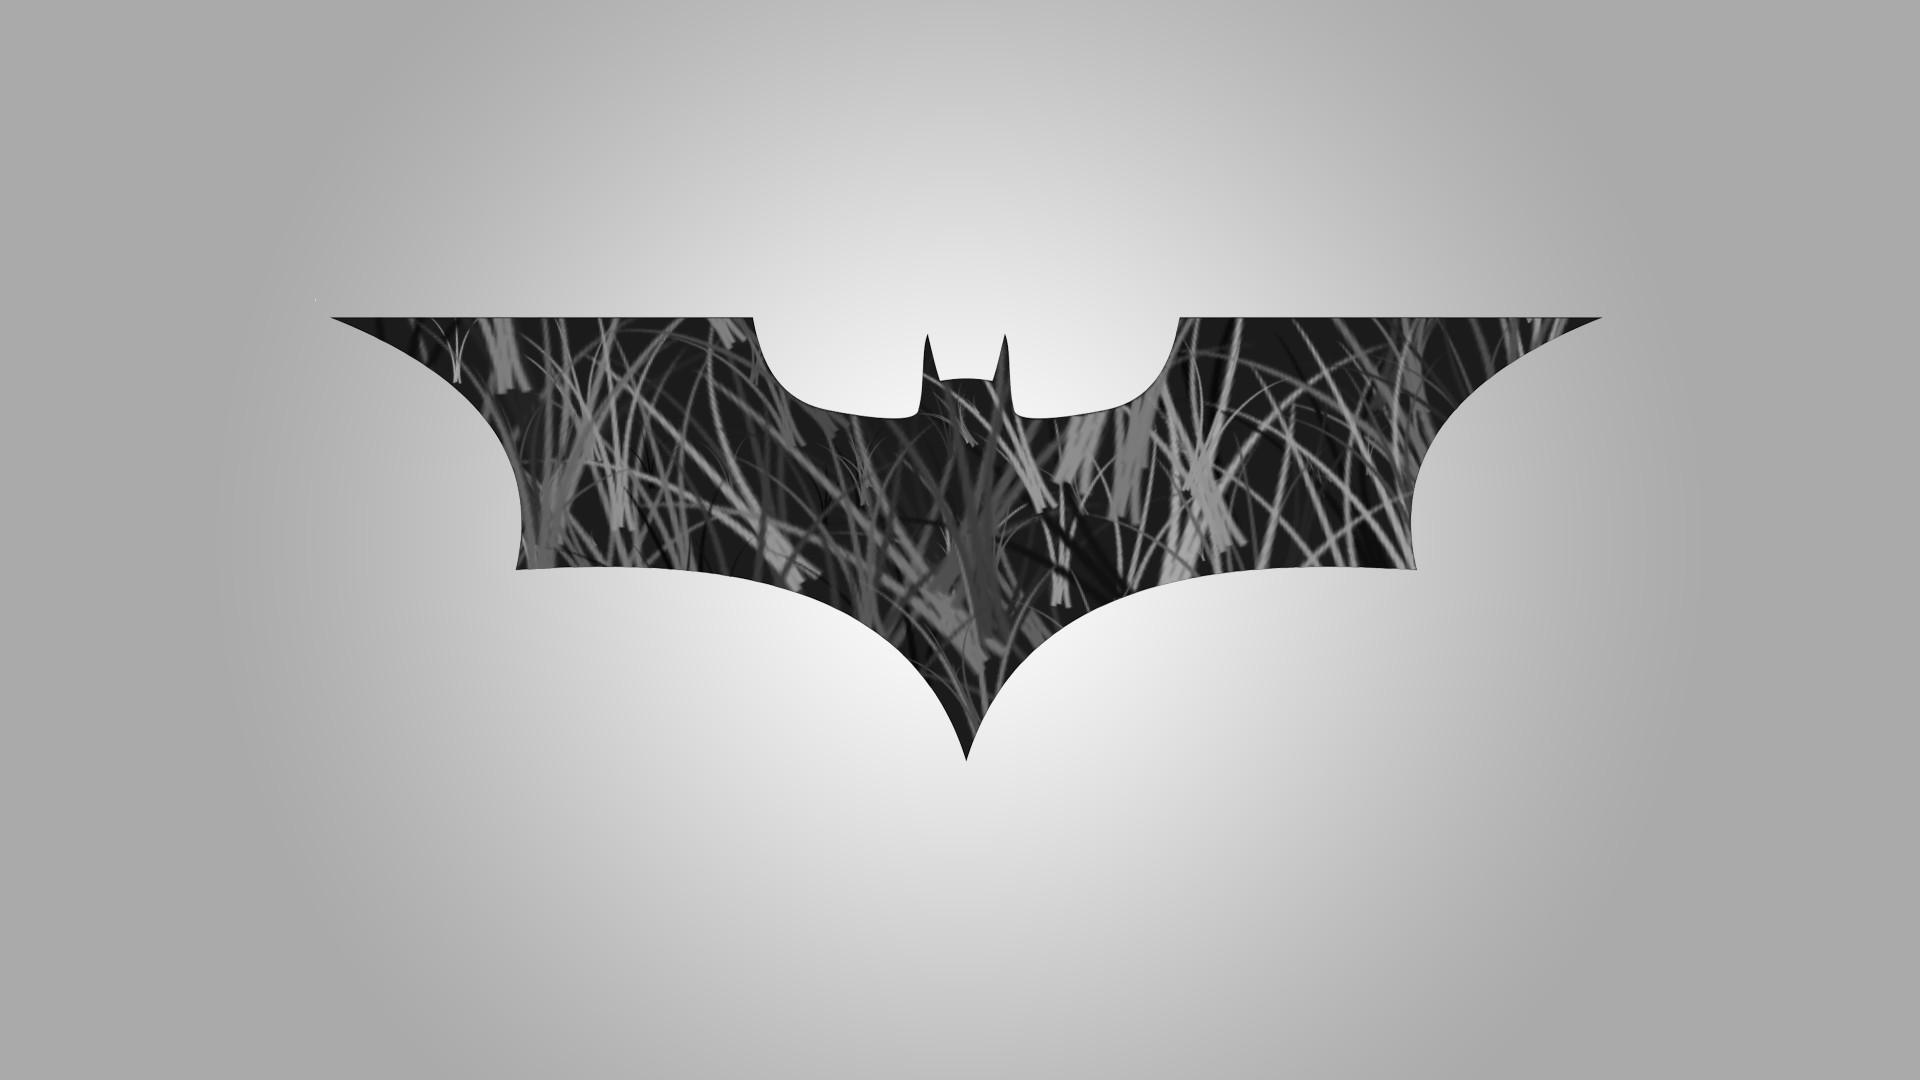 1920x1080, Batman Symbol Wallpapers - Batman Logo Desktop Wallpaper Hd - HD Wallpaper 